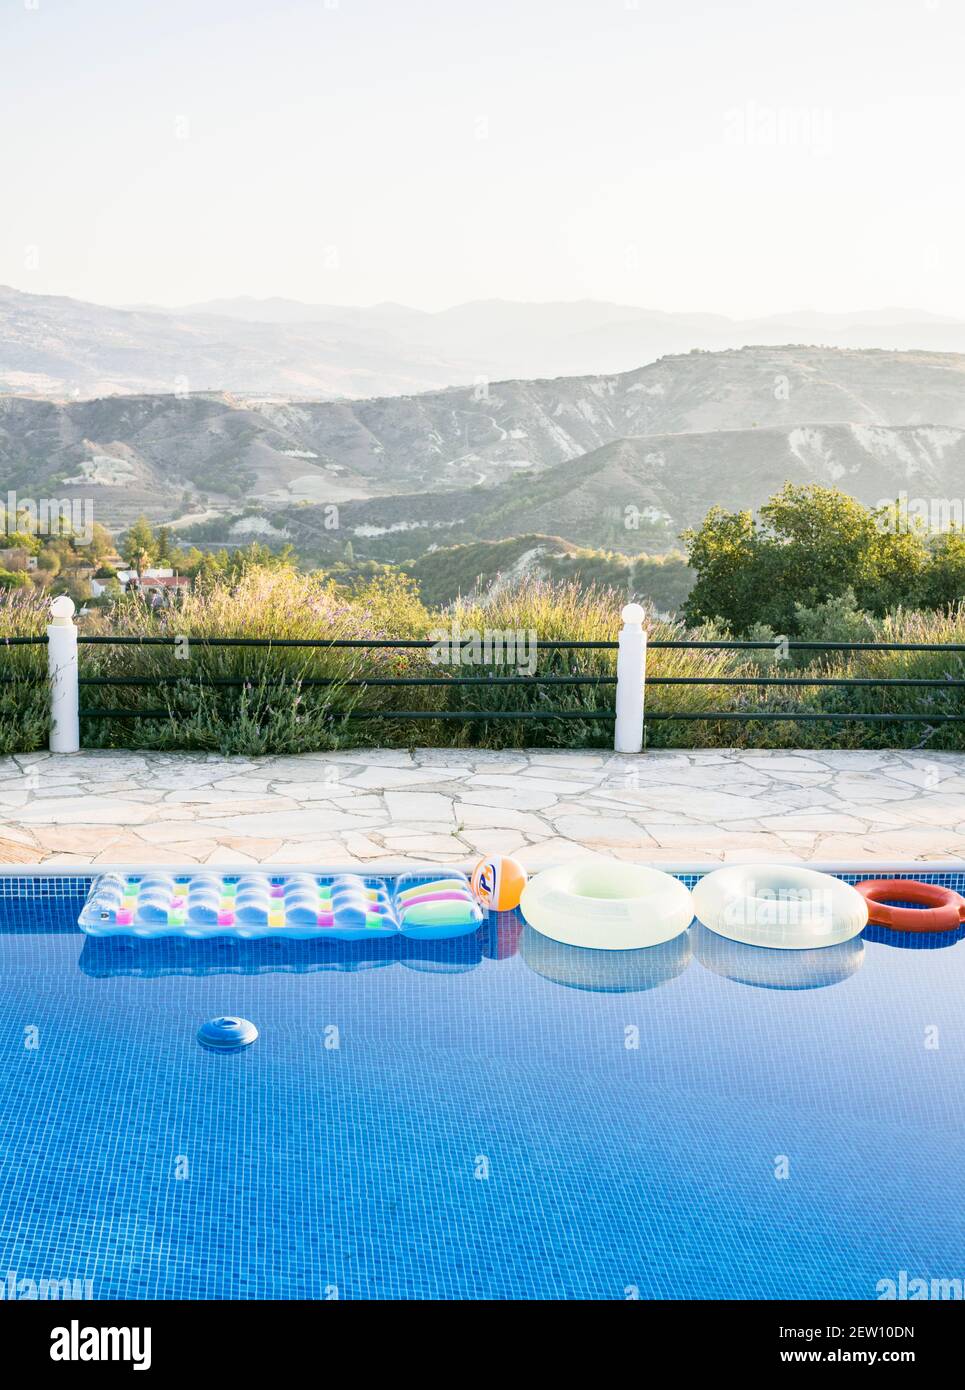 vue sur une piscine avec des inflatables, avec une magnifique chaîne de montagnes en toile de fond Banque D'Images